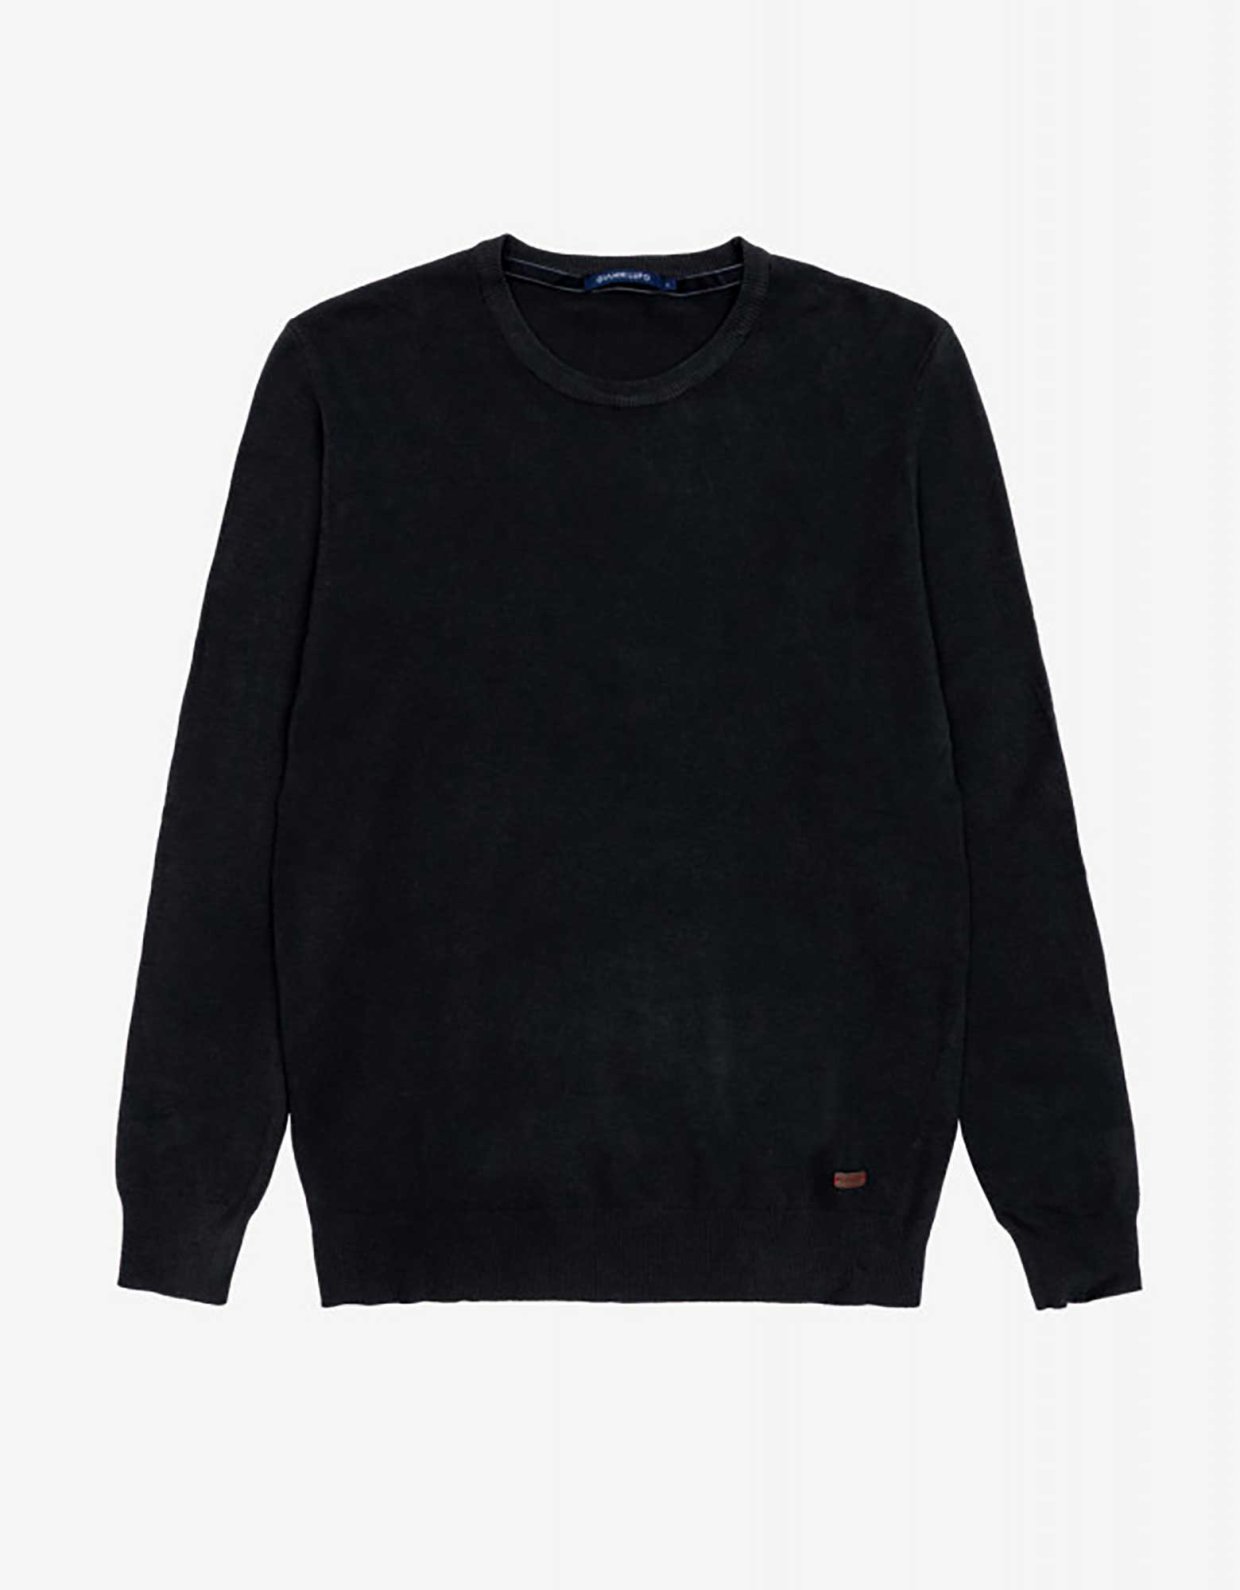 Gianni Lupo Black round neck sweater